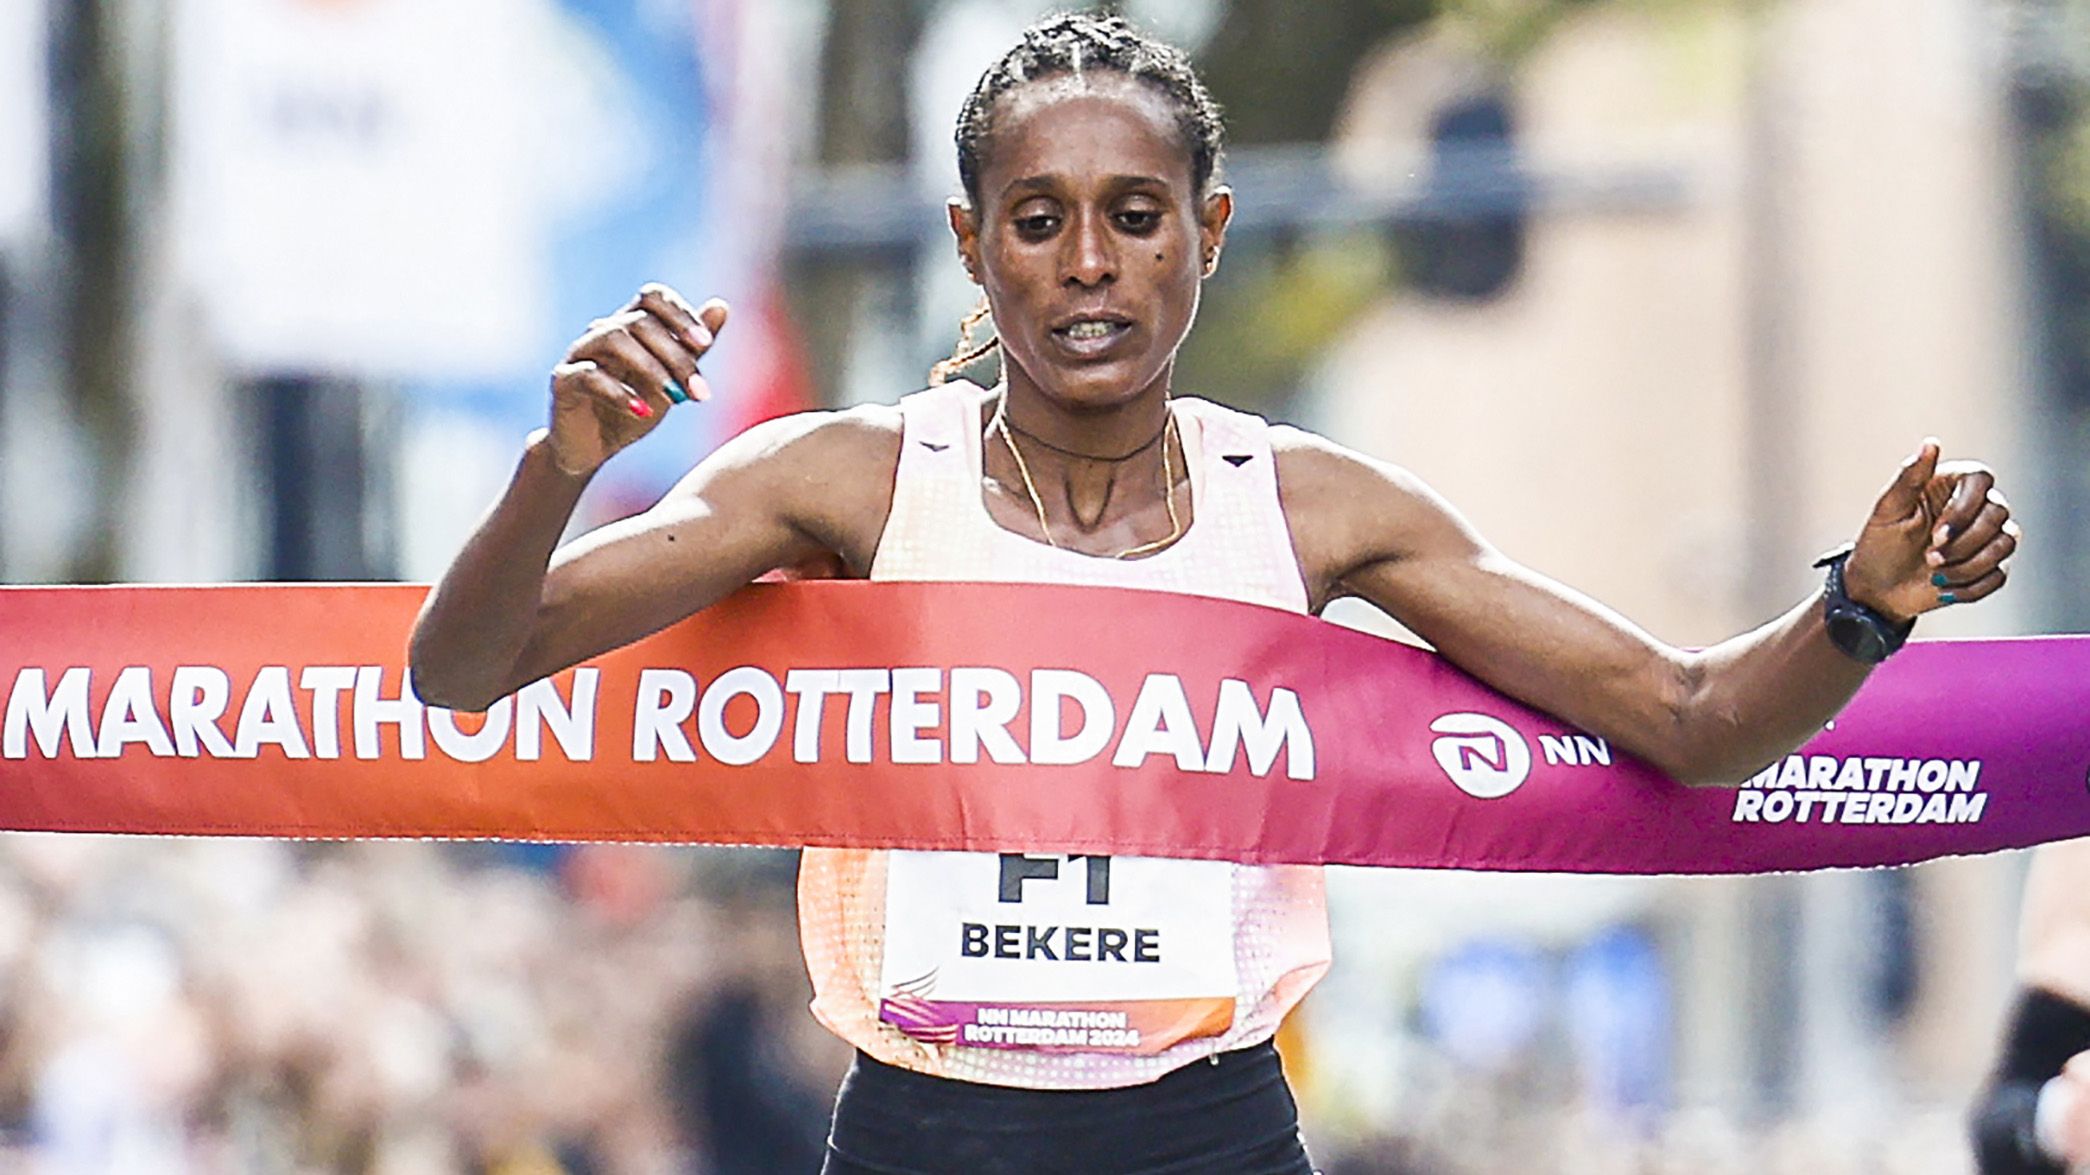 Ashete Bekere wins the Rotterdam Marathon